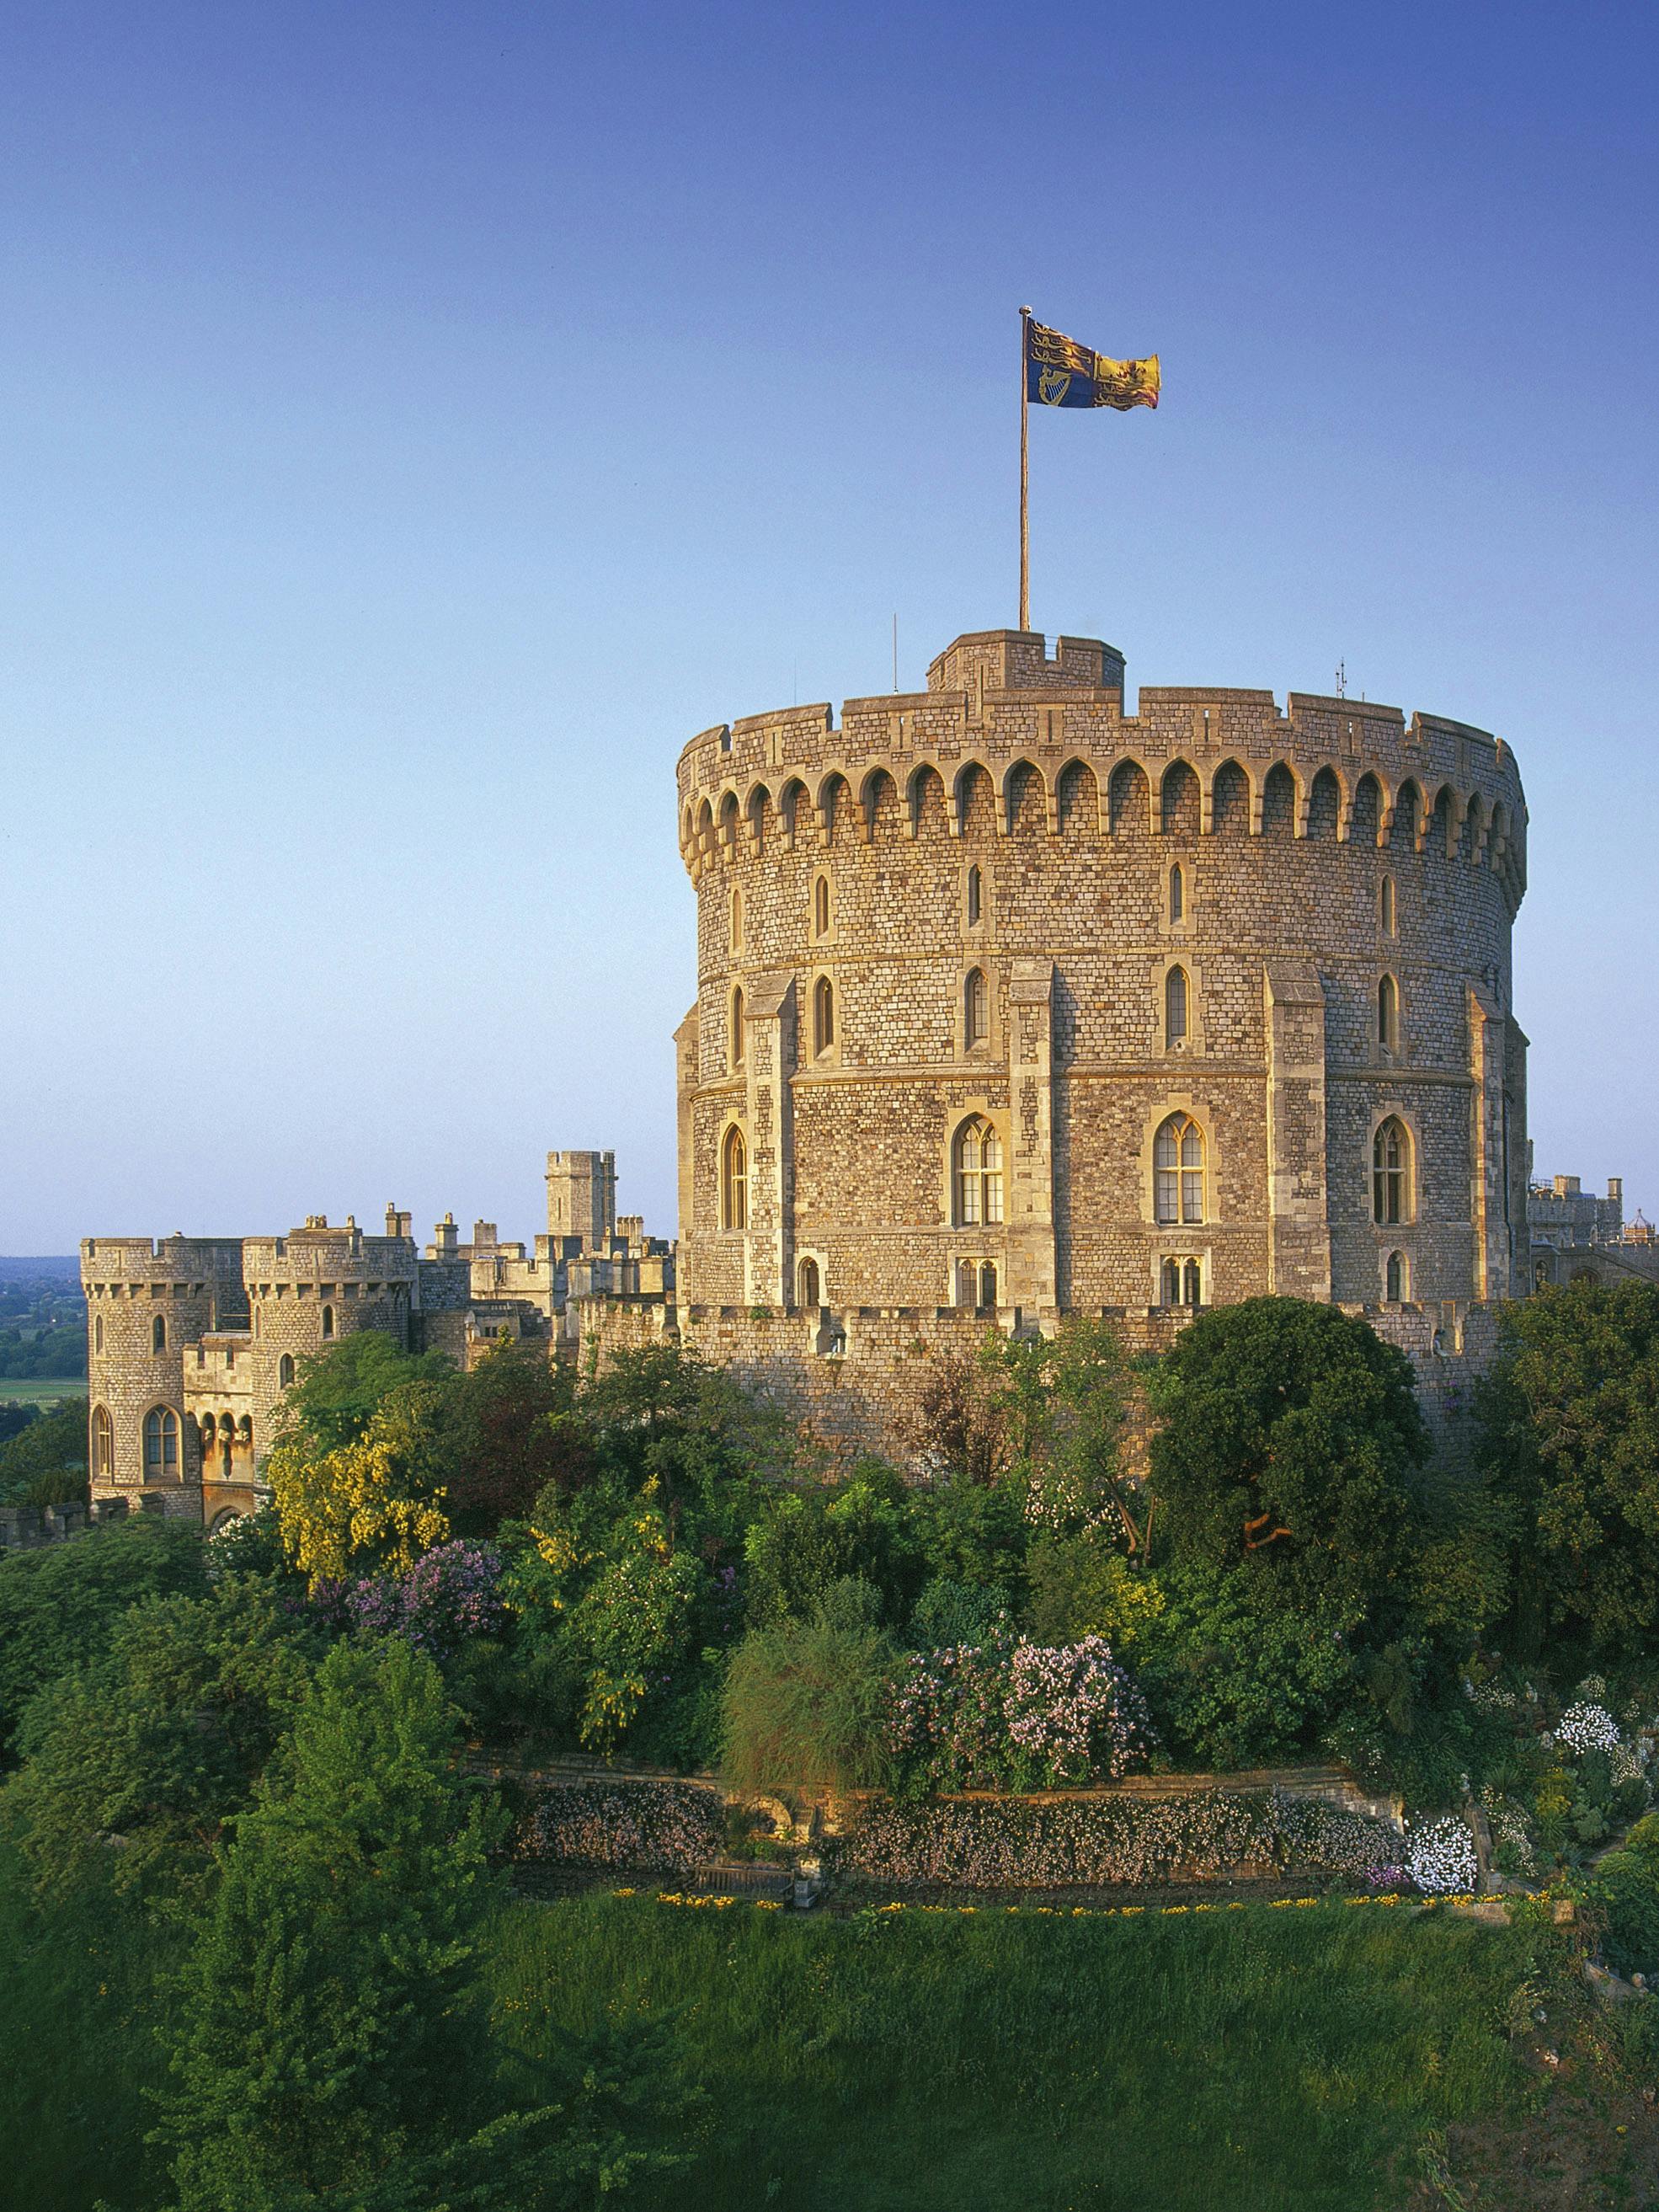 Visita guiada ao Castelo de Windsor com chá da tarde saindo de Londres